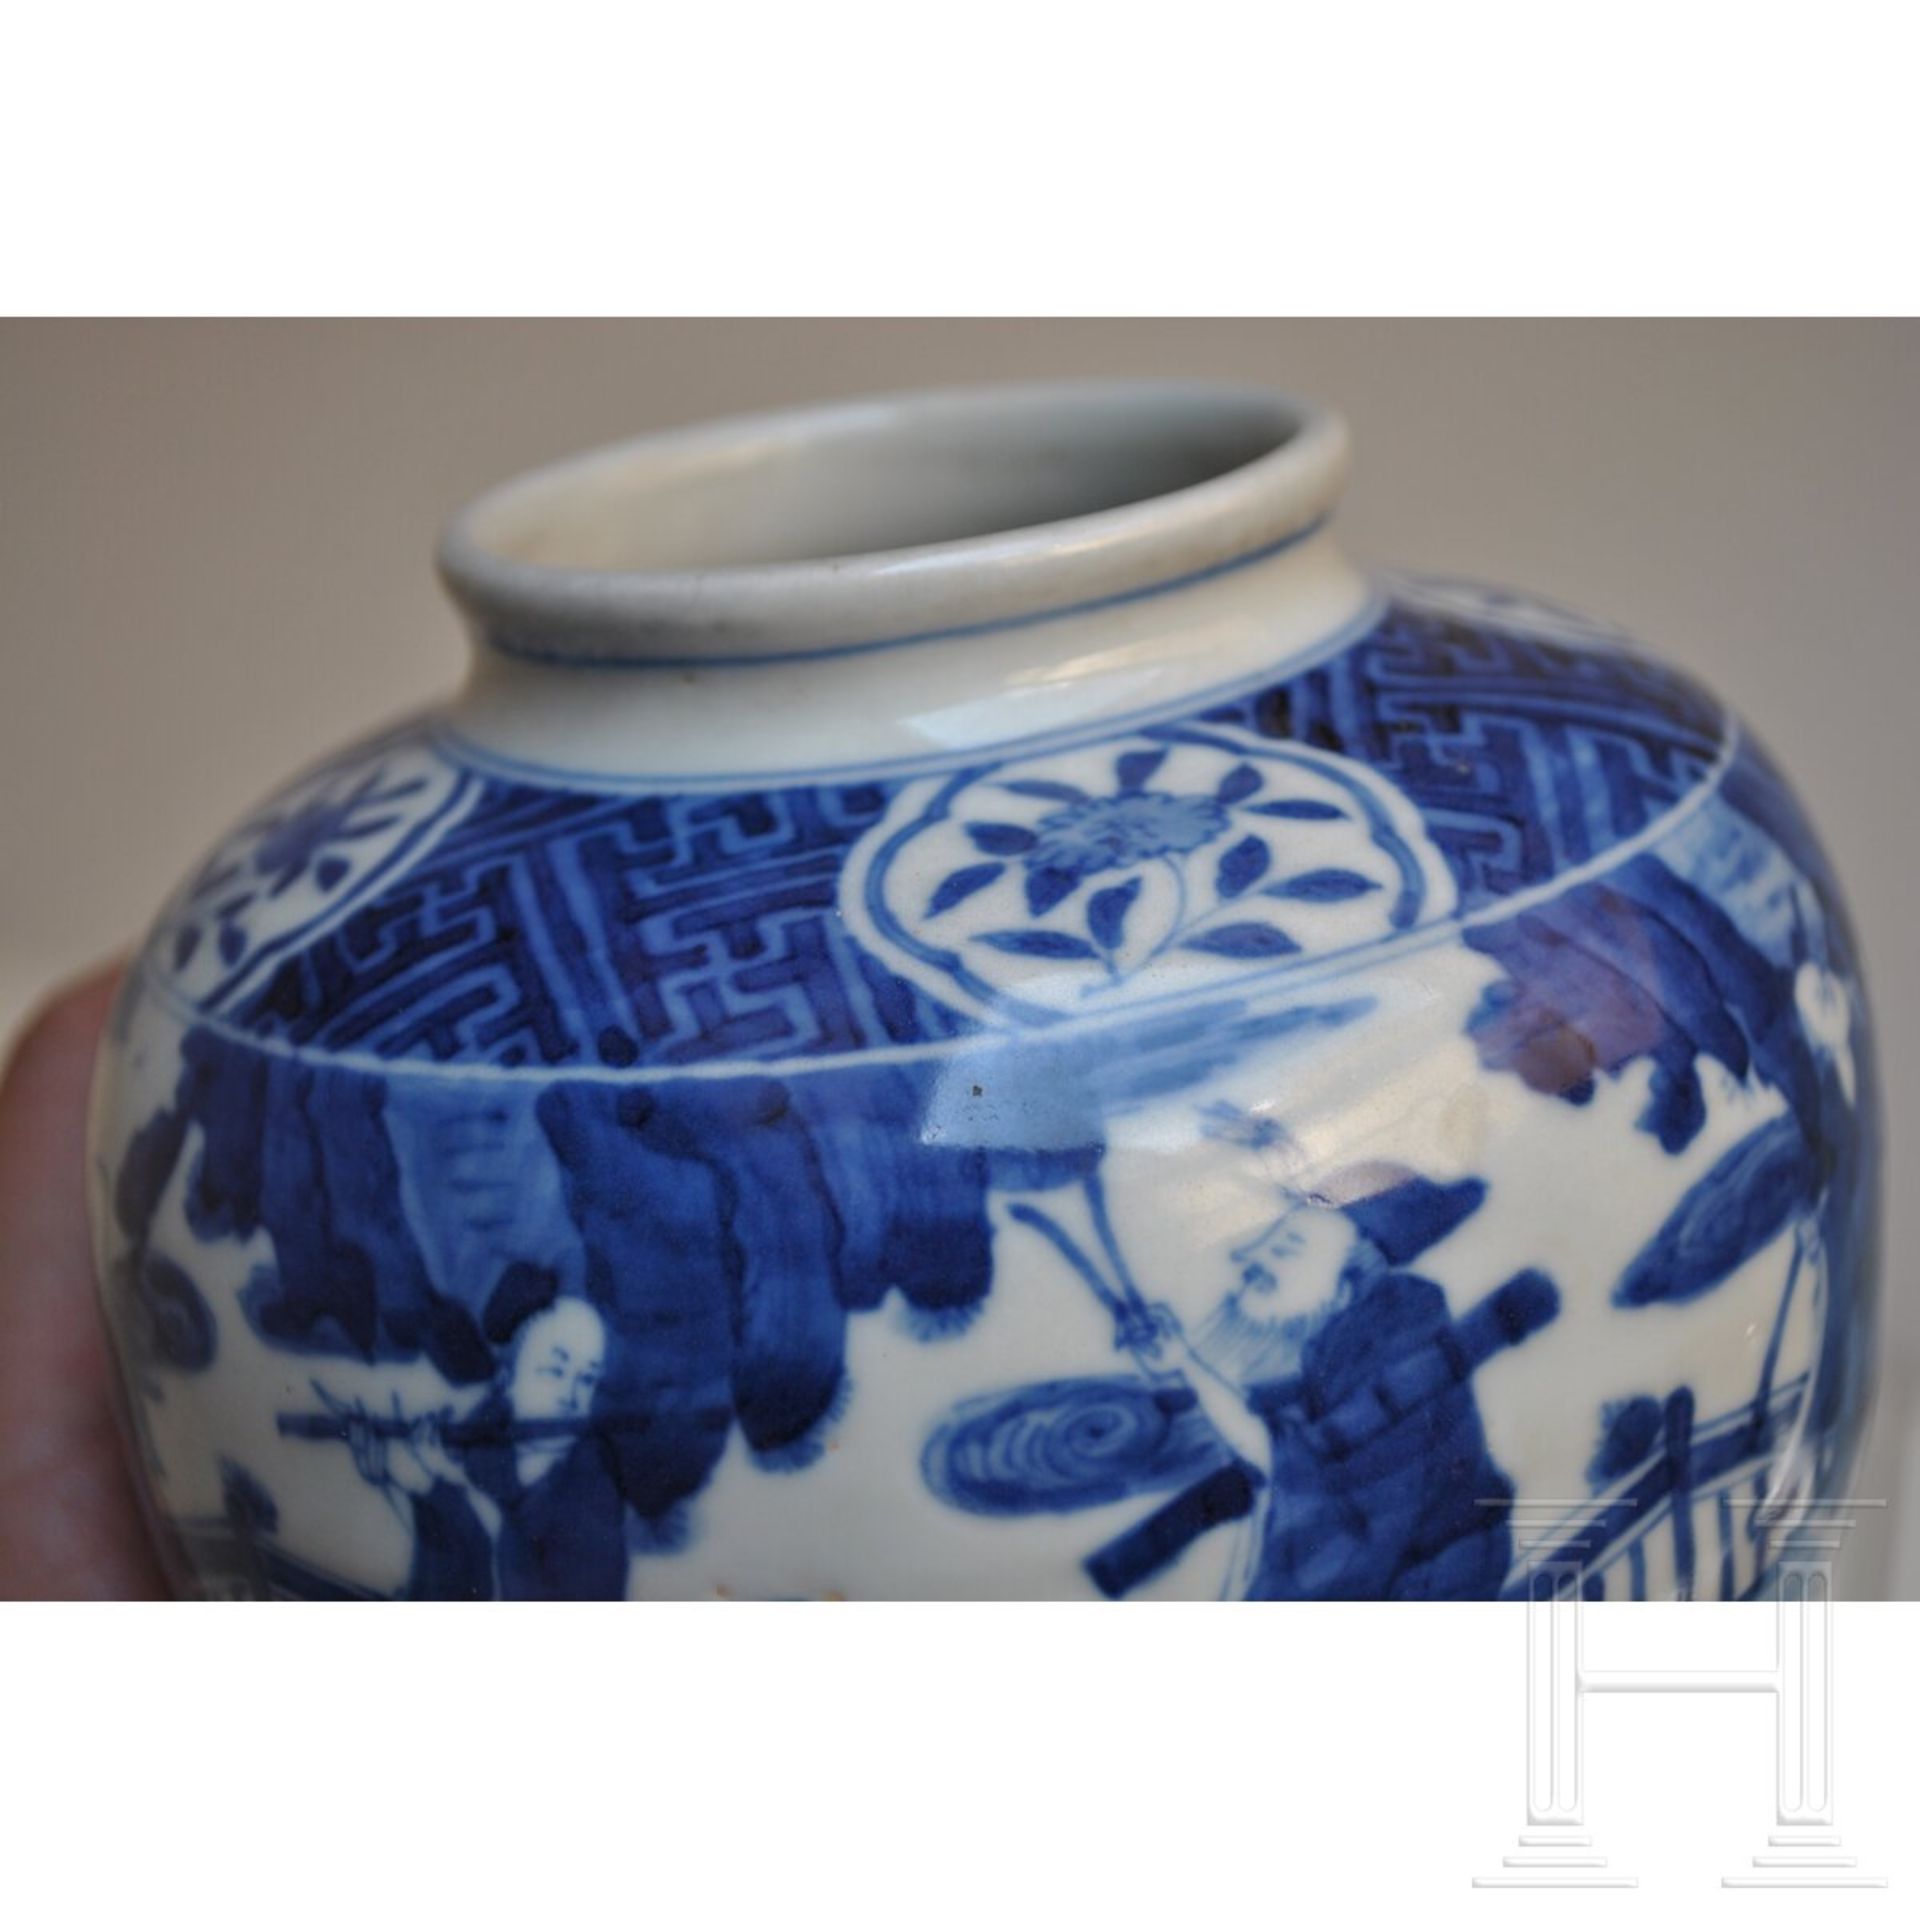 Blau-weiße Vase mit figürlicher Szene mit Wanli-Sechszeichenmarke, China, wahrscheinlich aus dieser - Image 8 of 18